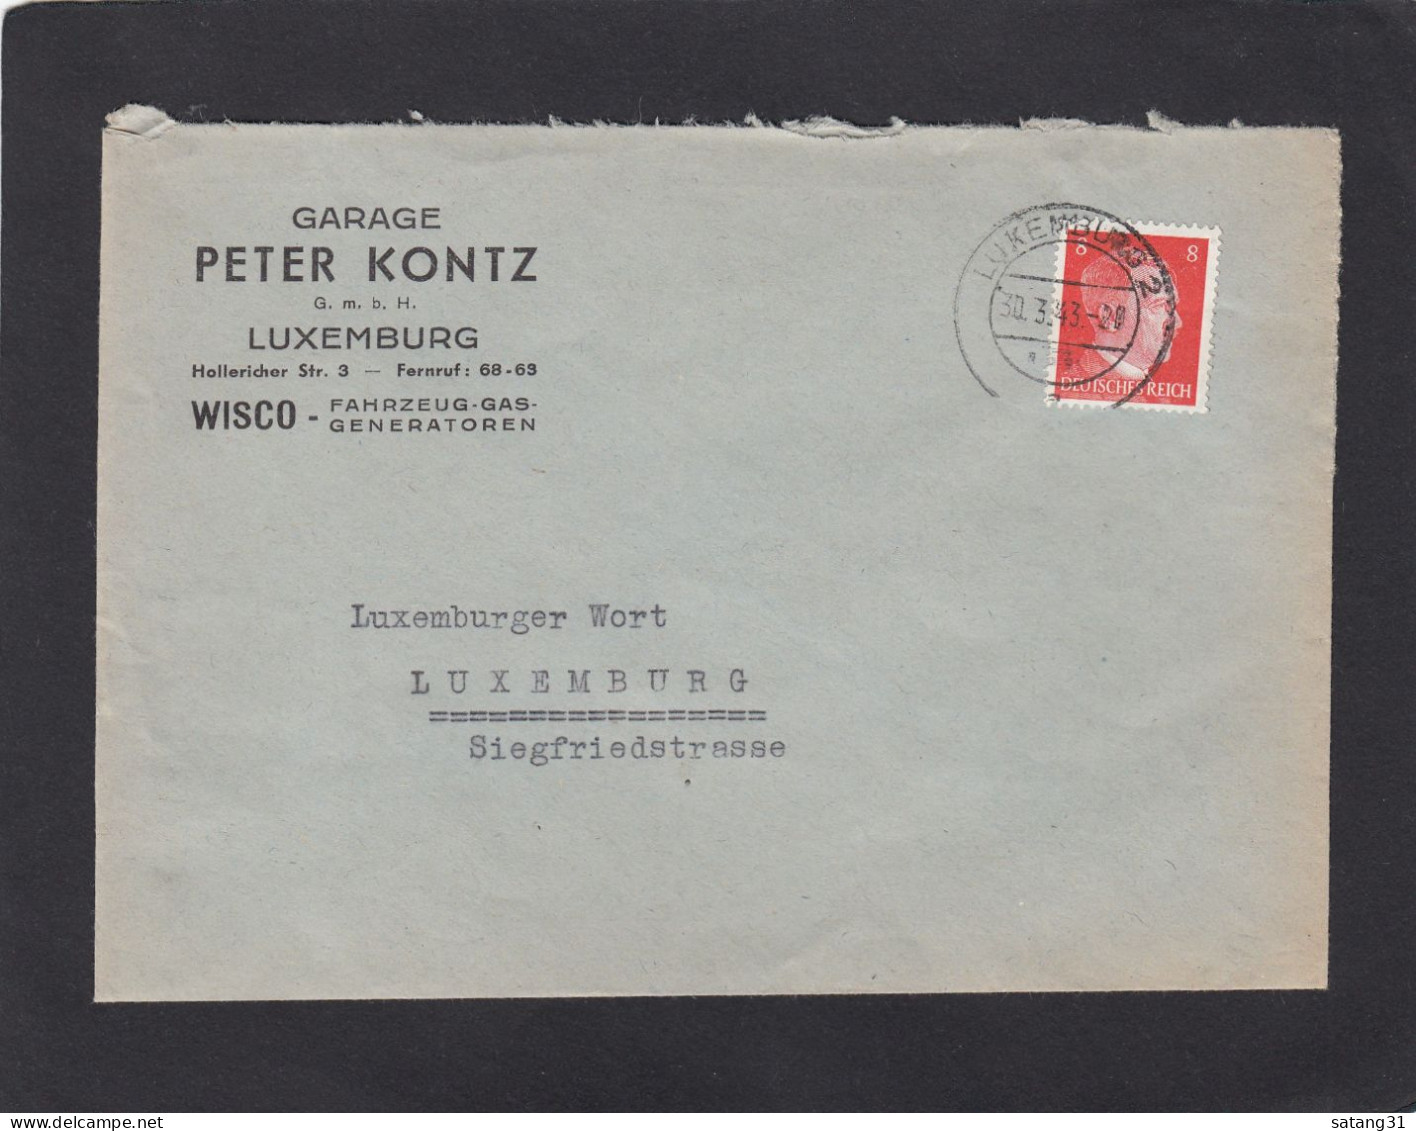 GARAGE PETER KONTZ G.M.B.H., LUXEMBURG. WISCO - FAHRZEUG-GAS-GENERATOREN. - 1940-1944 Occupation Allemande